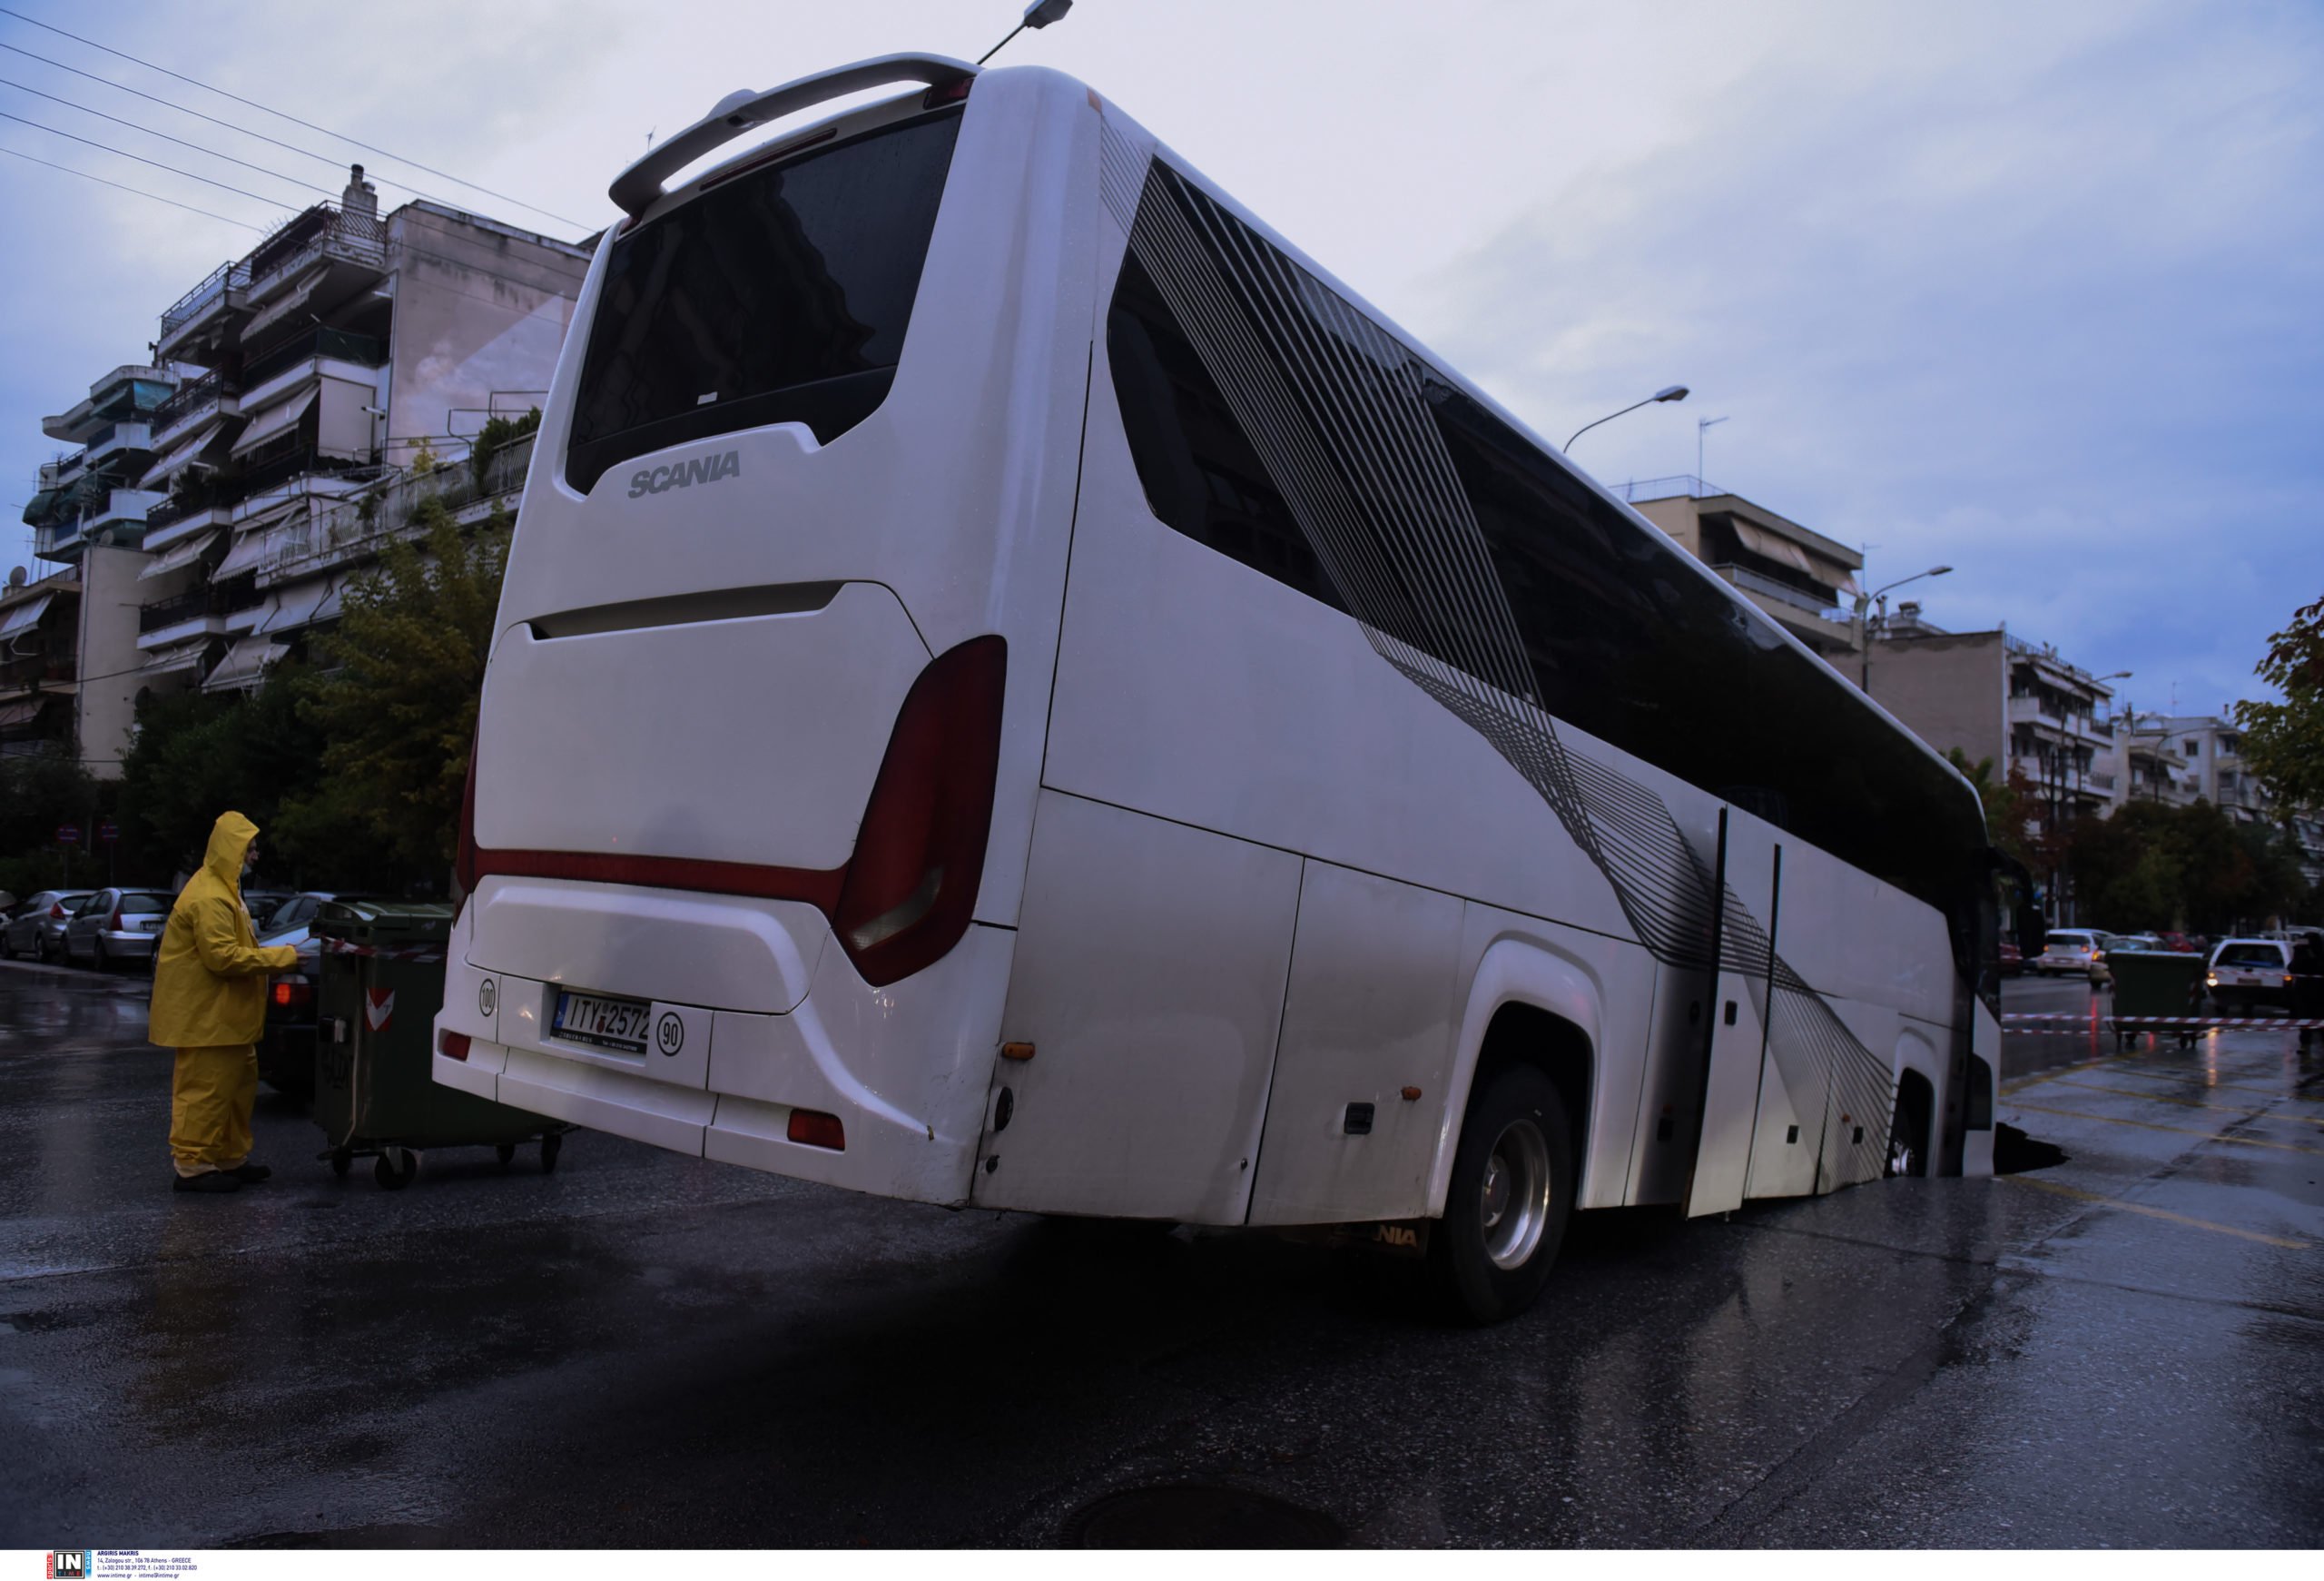 Κακοκαιρία “Μπάλλος”: Η σοκαριστική περιγραφή από τον οδηγό του λεωφορείου που “βούλιαξε” στον δρόμο